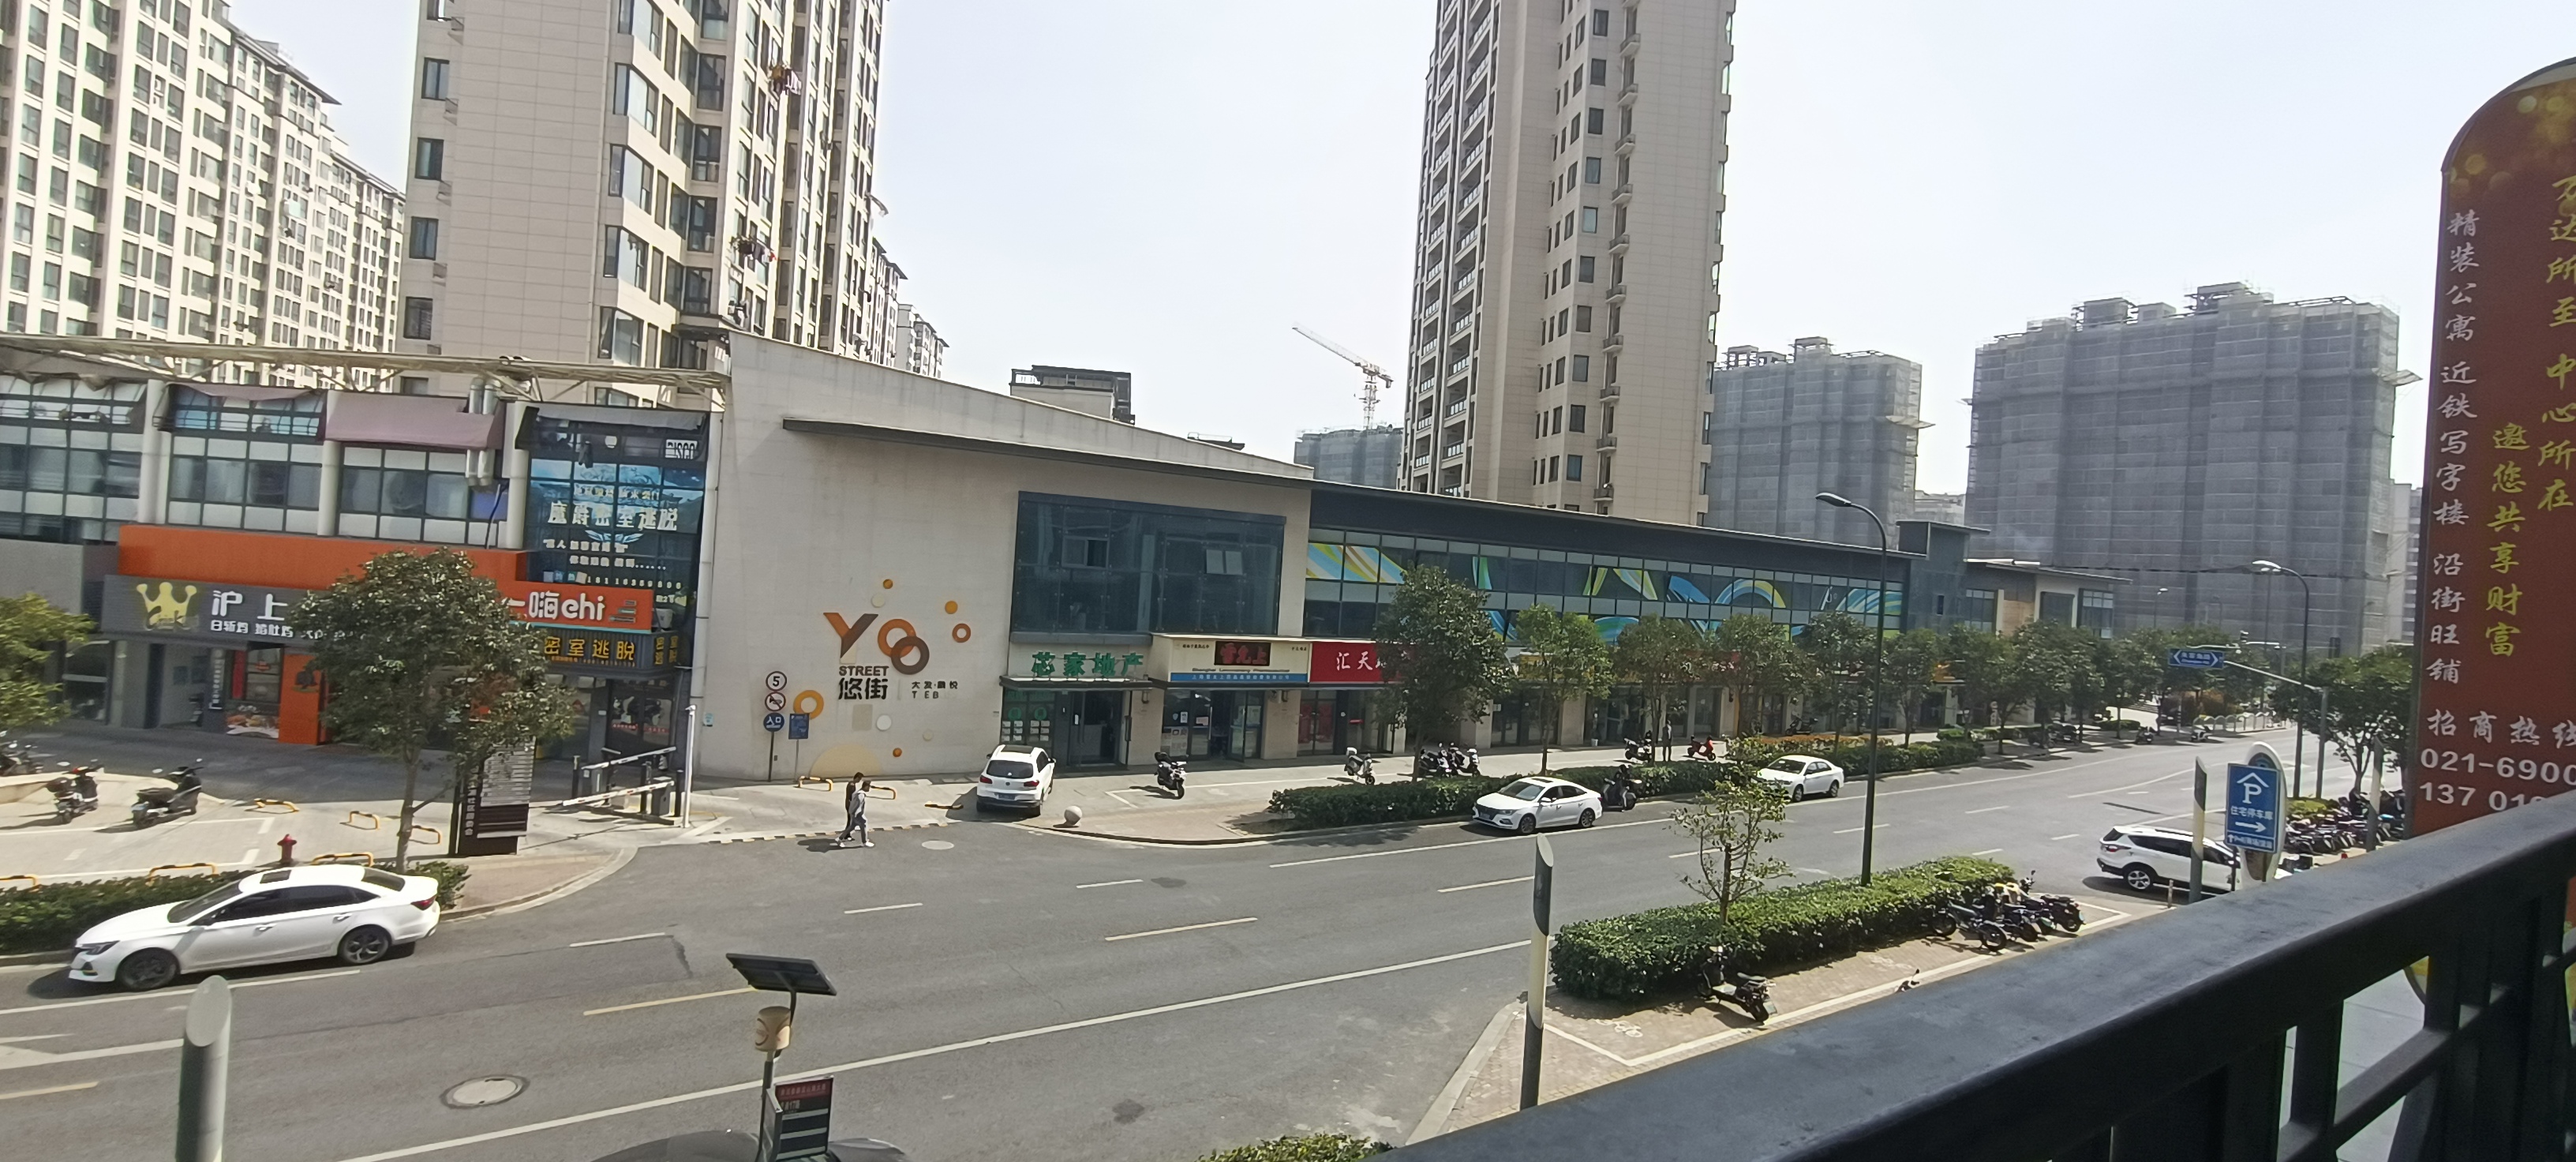 上海青浦万达茂金街外街商铺招商